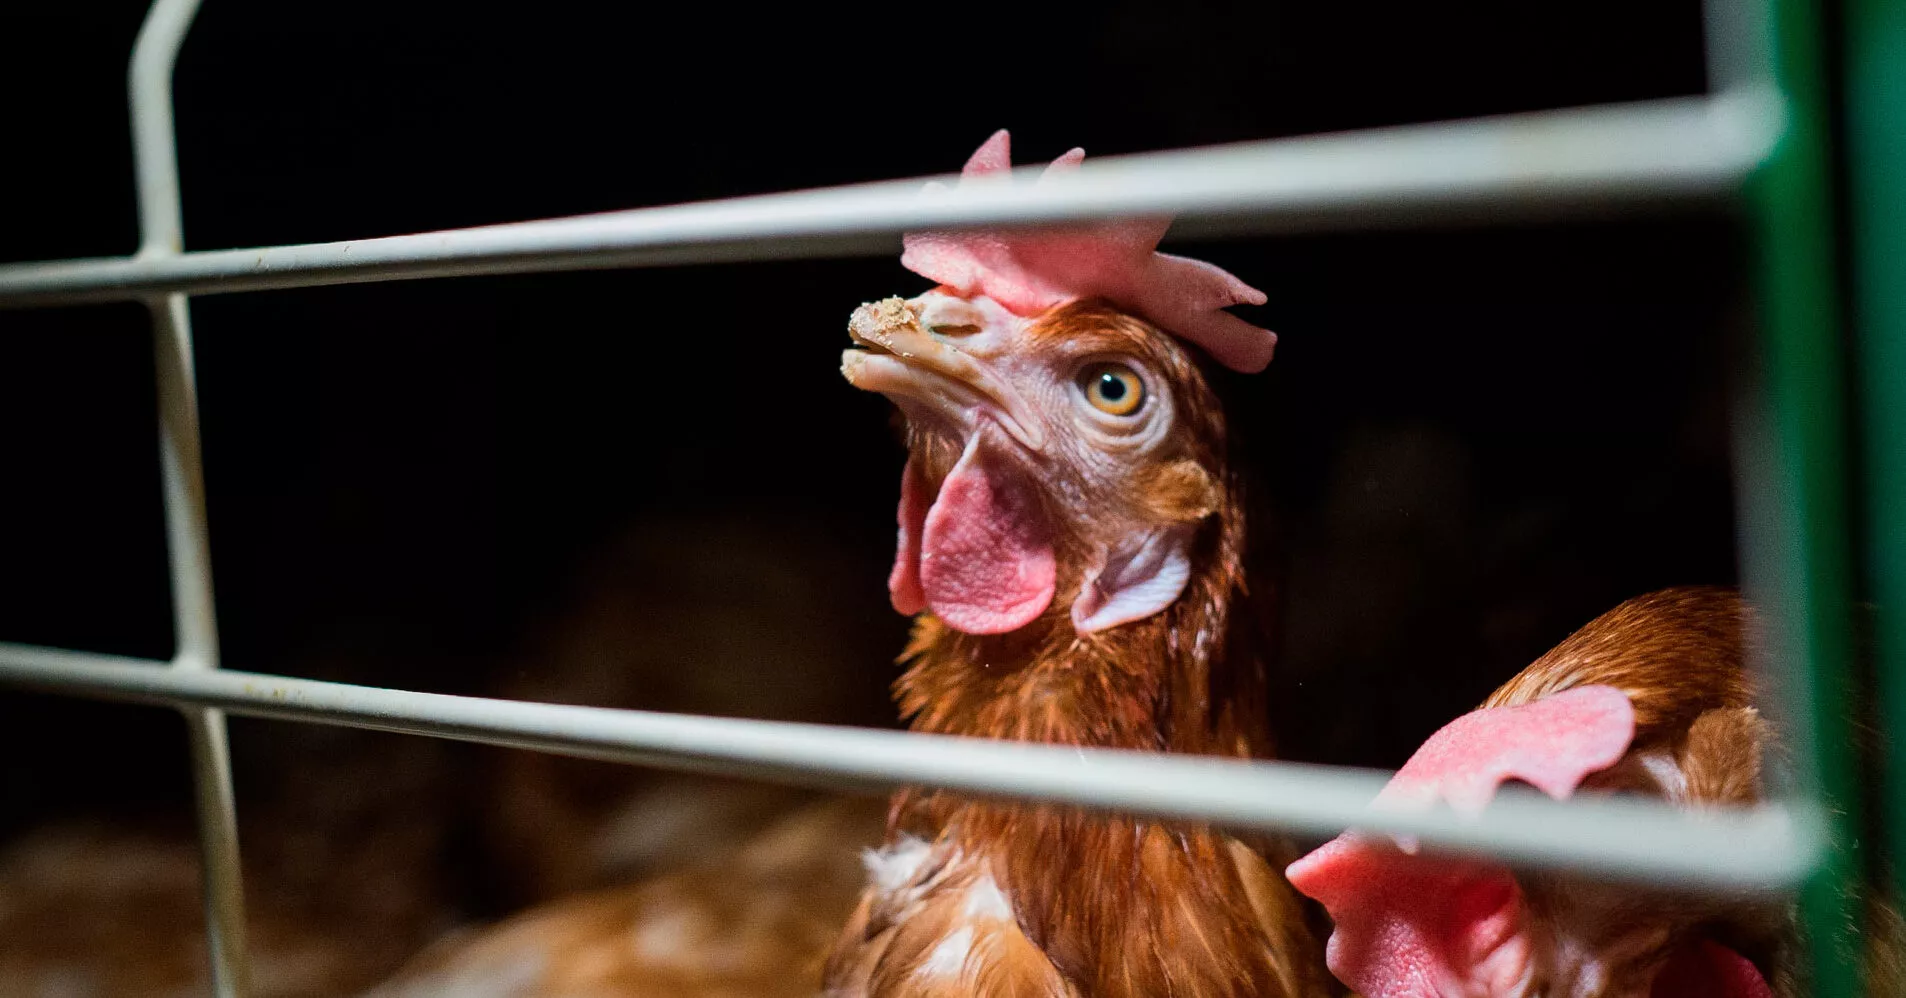 Gallina con el pico cortado encerrada en una jaula en una granja de gallinas para huevos. Ella mira por los barrotes al exterior